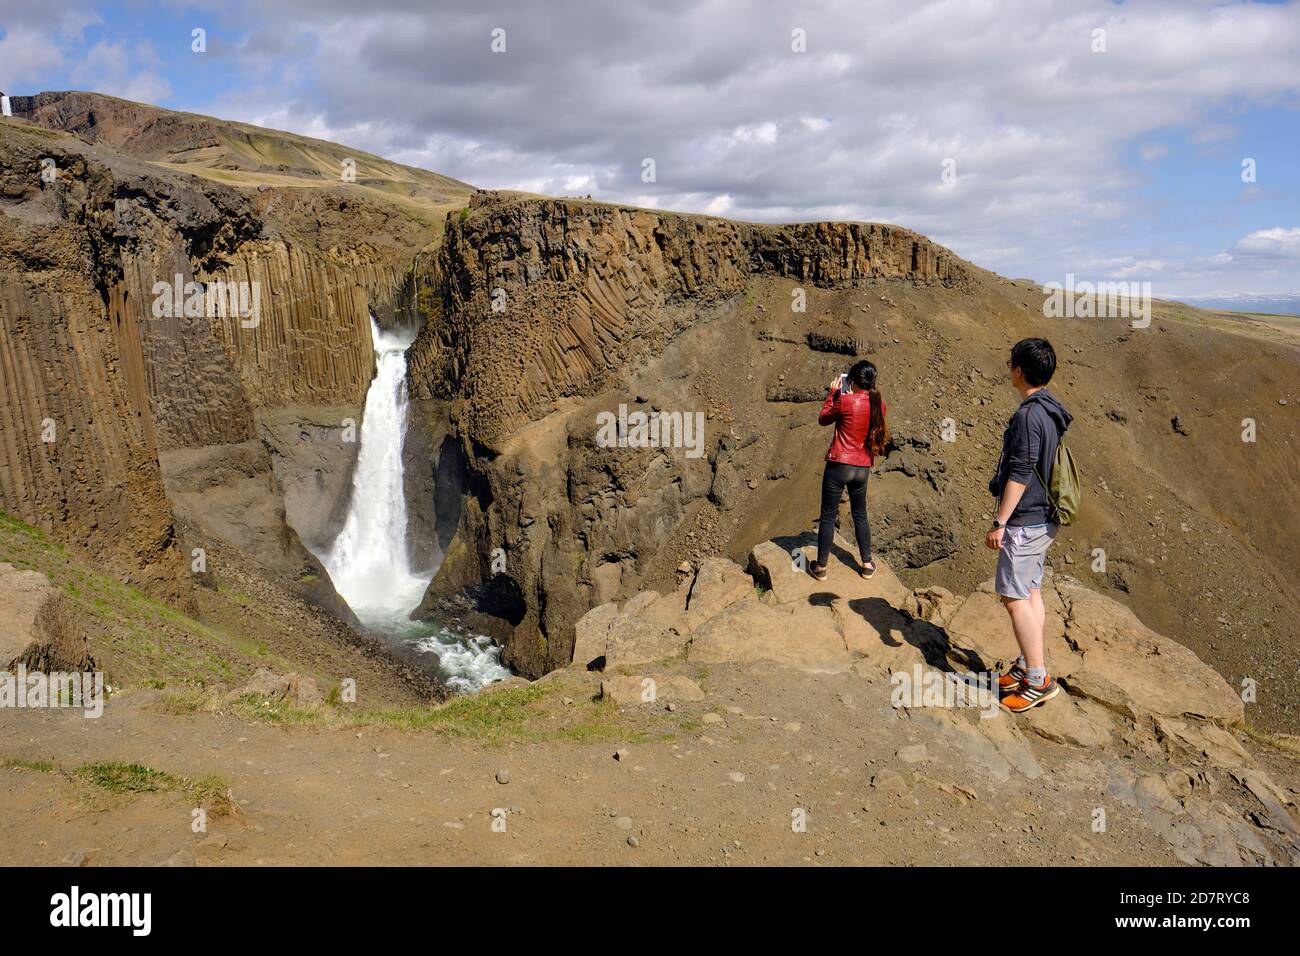 Touristen fotografieren auf ihren mobilen Geräten am Wasserfall Litlanesfoss In Ostisland - Island Tourismus Stockfoto